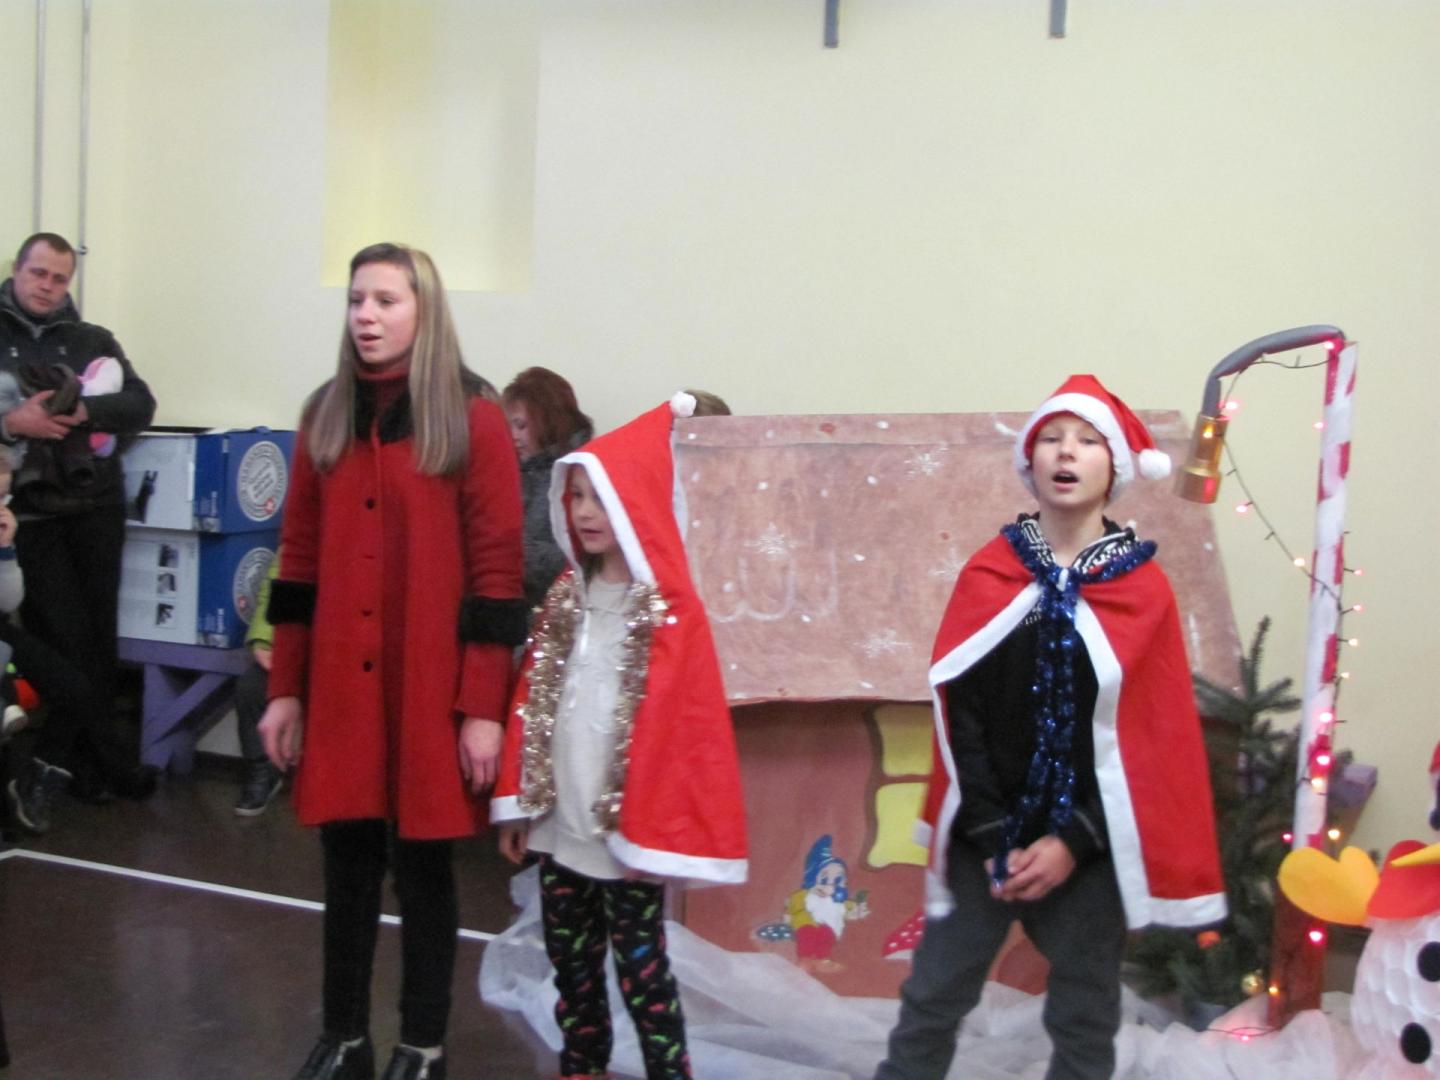  Į šventę ,,Kalėdiniai varpeliai“, susirinko gausus būrys vaikučių ir jų artimųjų.